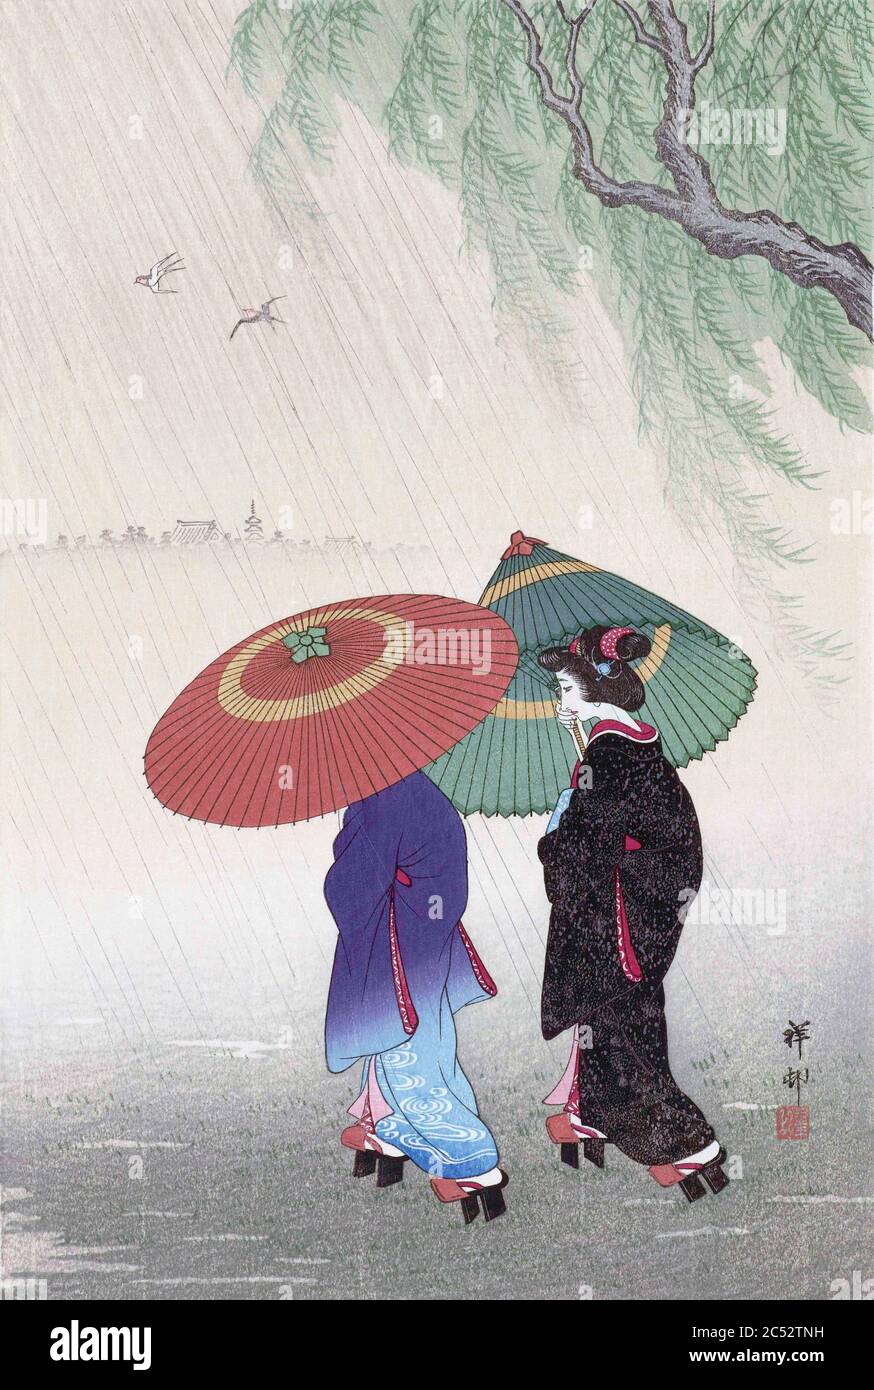 Deux femmes dans la pluie, par l'artiste japonais Ohara Koson, 1877 - 1945. Ohara Koson faisait partie du mouvement Shin-hanga, ou de nouvelles gravures. Banque D'Images